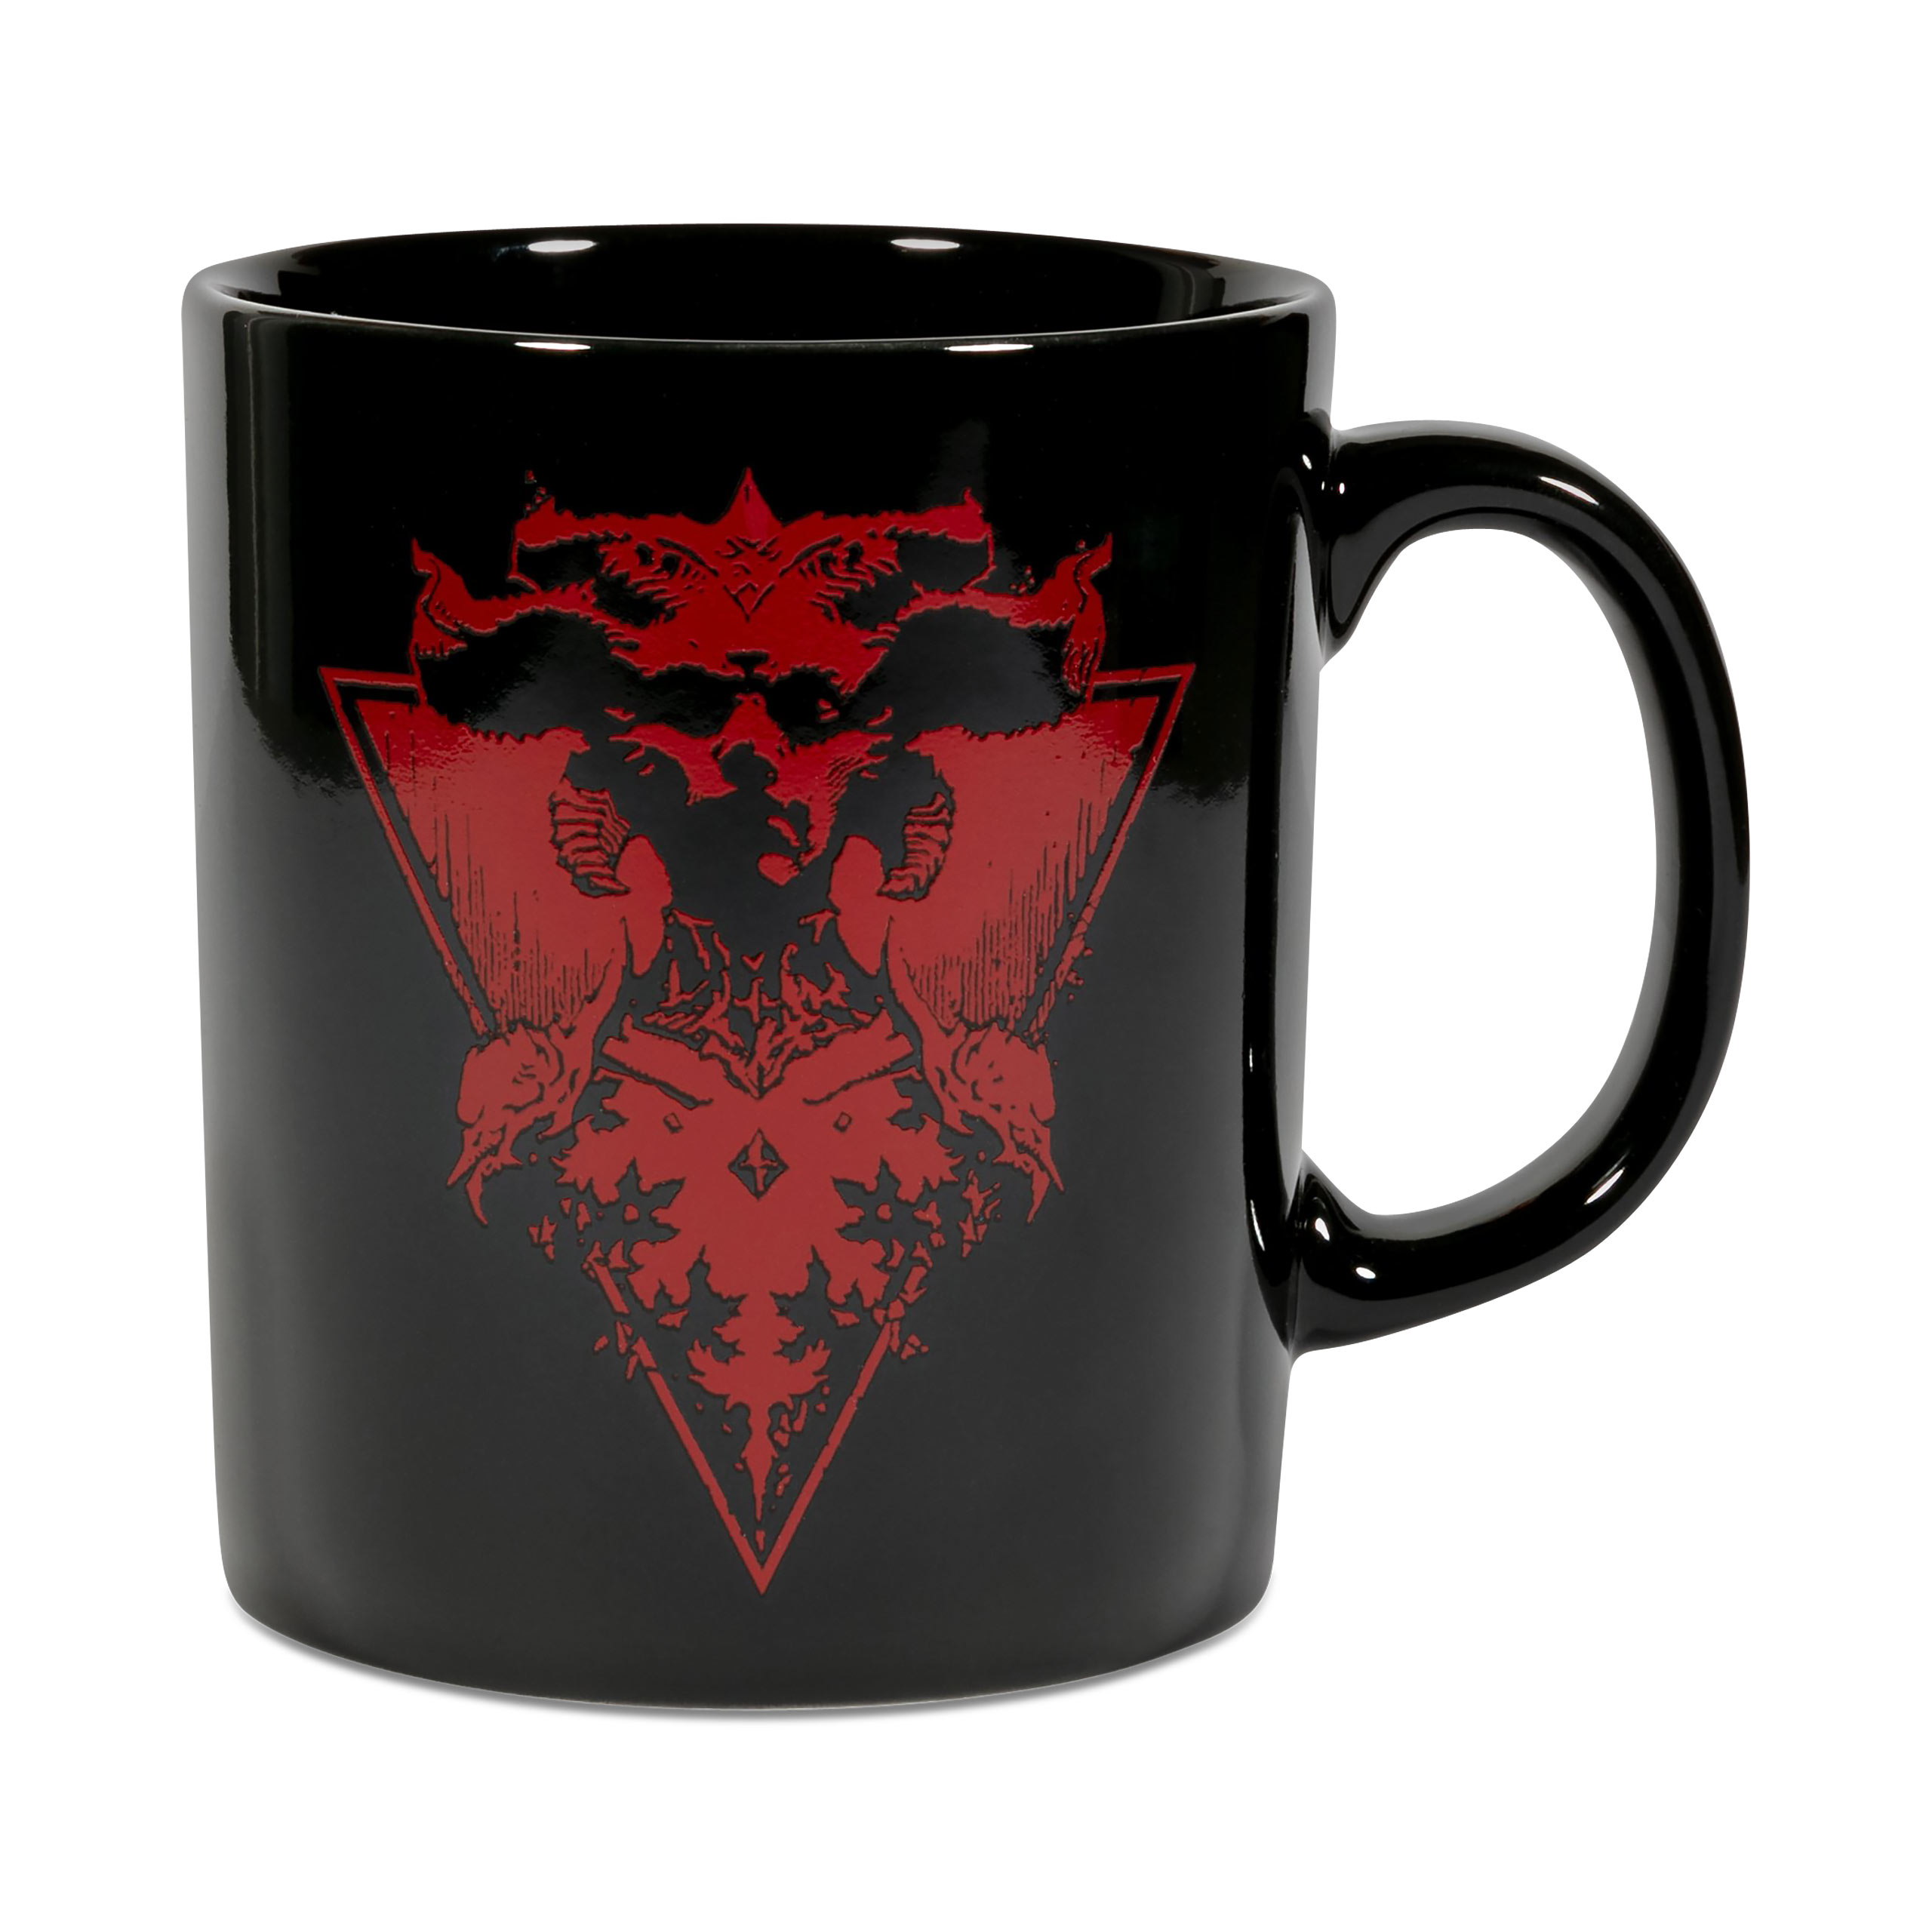 Diablo IV - Plus chaud que l'enfer tasse noire